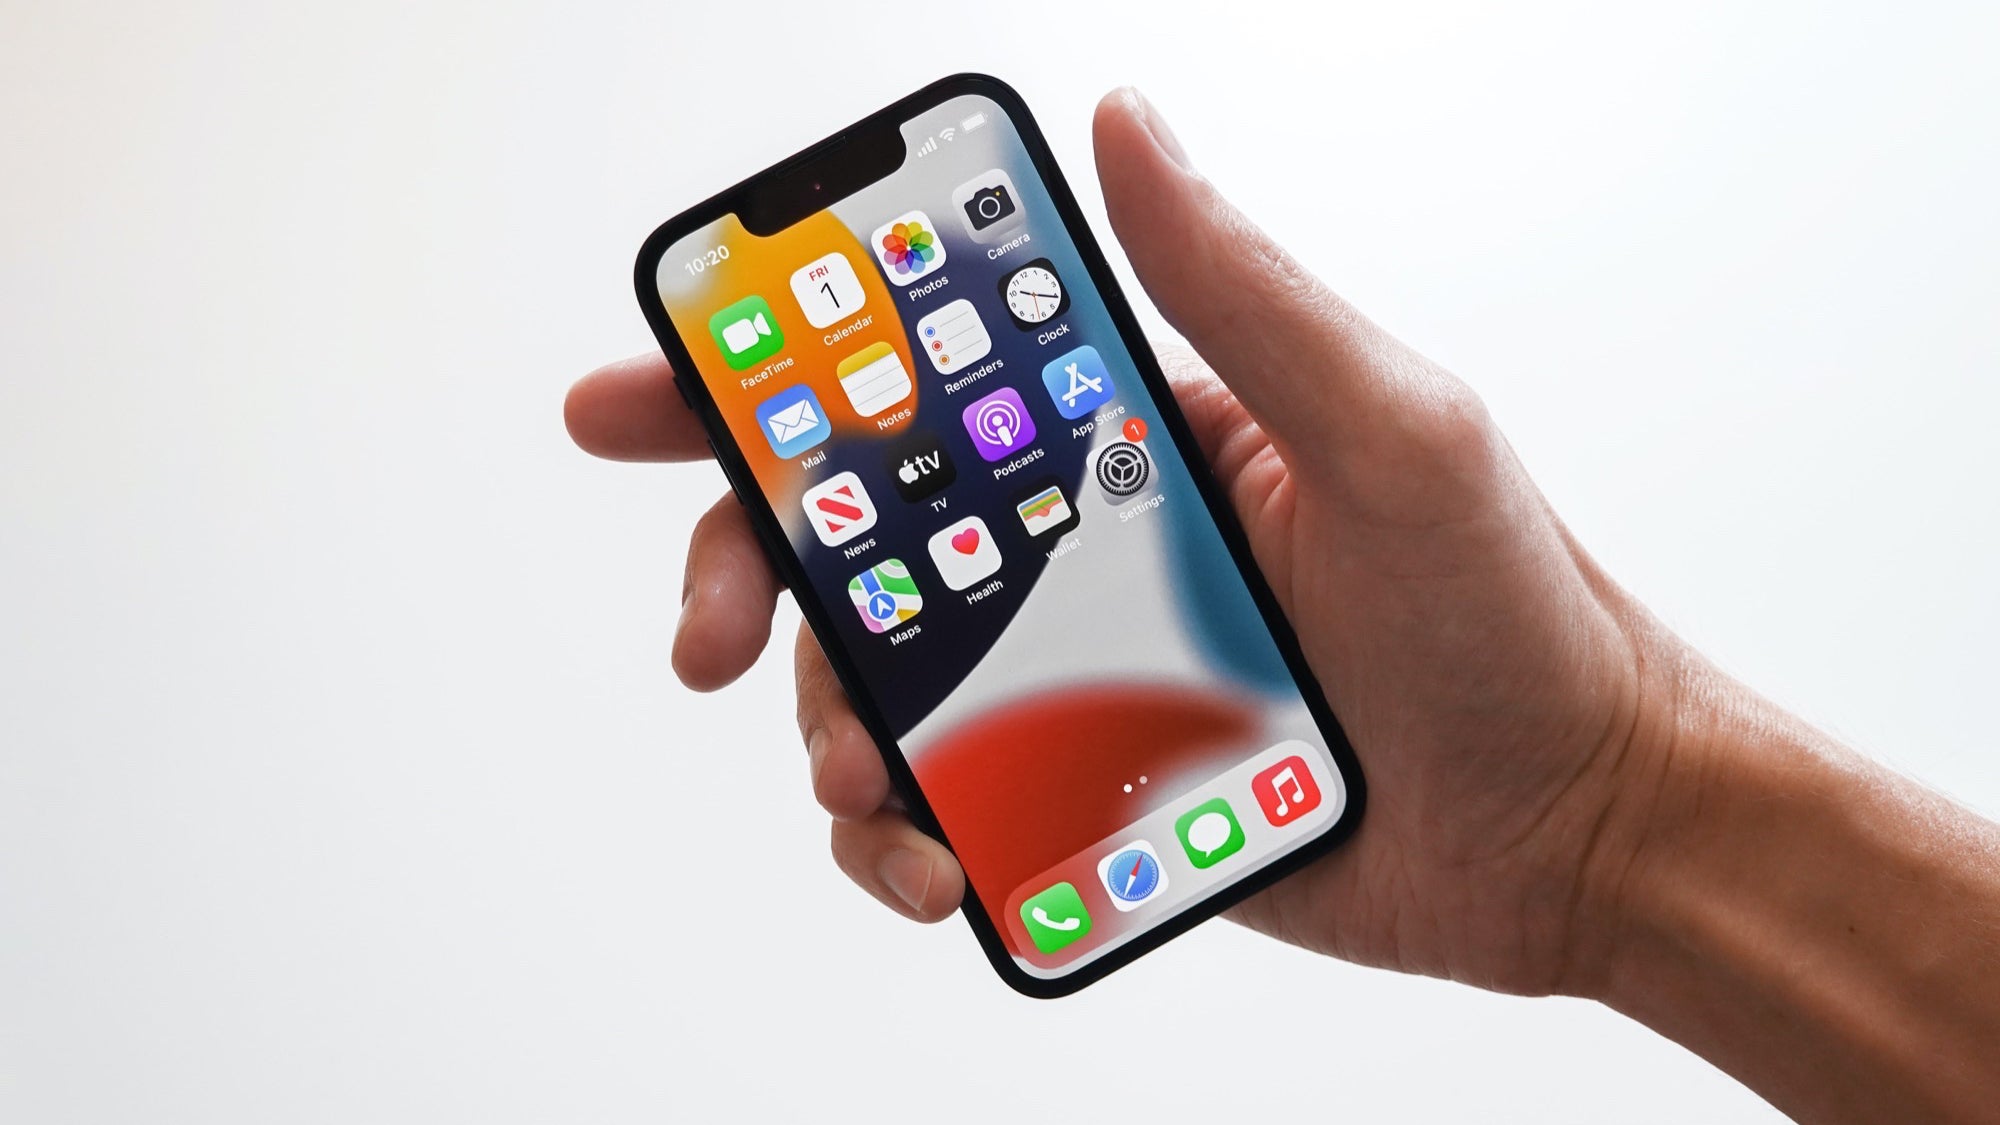 Мини iPhone на Apple се предлага с максимална издръжливост.  - iPhone 14 Pro Max с батерия от 5000 mAh ще бъде краят на дебата за батерията на Android срещу Apple